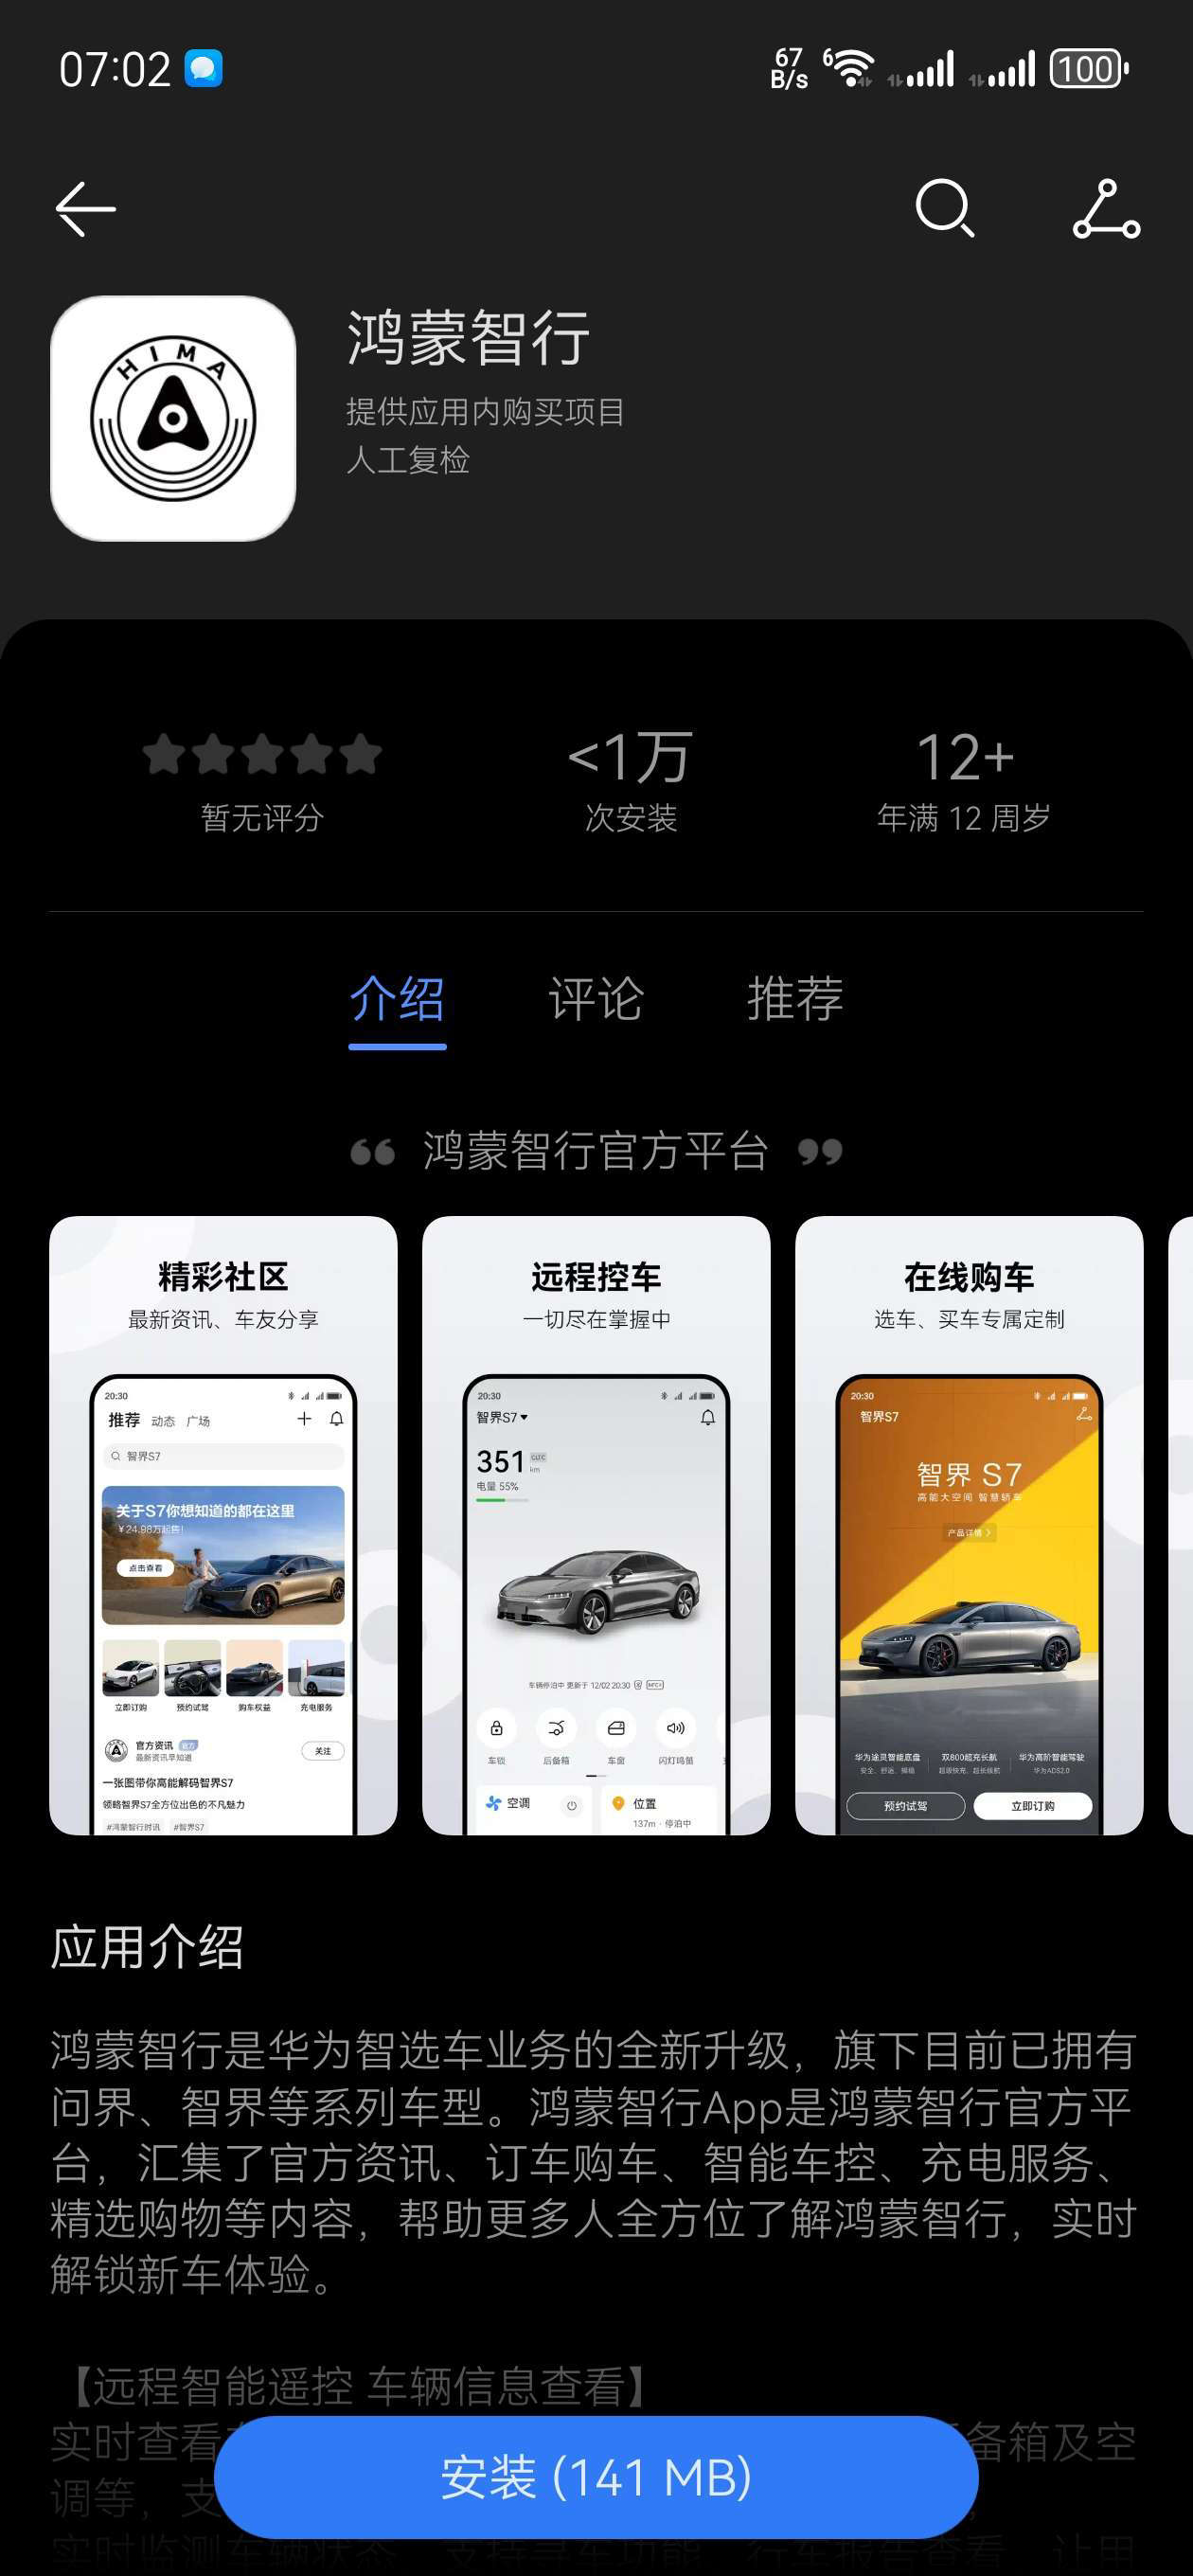 鸿蒙智行最畅销车型 问界新M7大定两个半月破10万_中华网